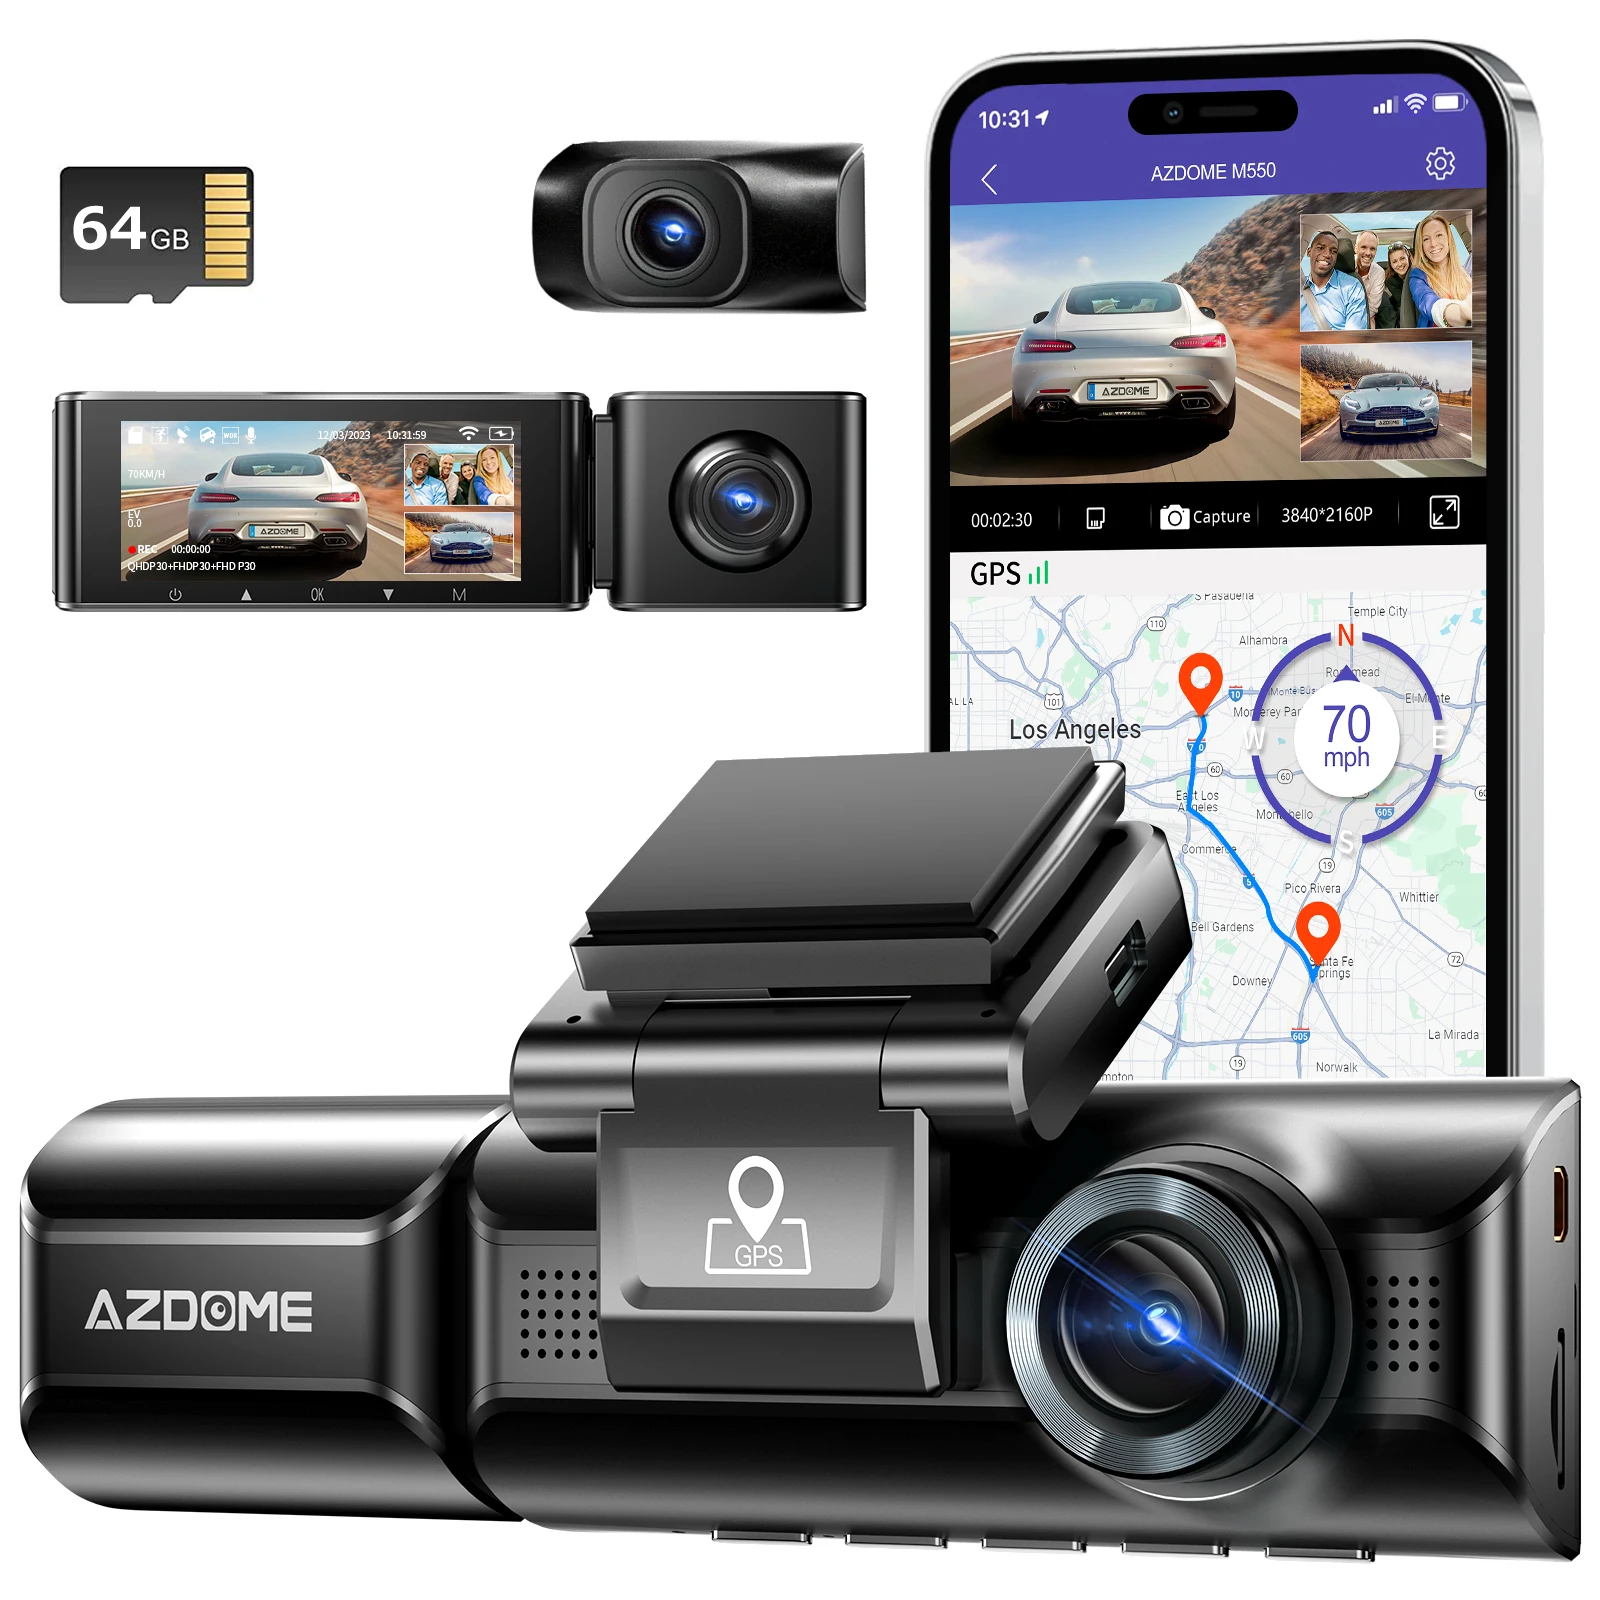 AZDOME M550 caméra de tableau de bord 3 canaux, caméra de tableau de bord avant et arrière à trois voies, double canal 4K + 1080P, avec GPS, WiFi, Vision nocturne IR